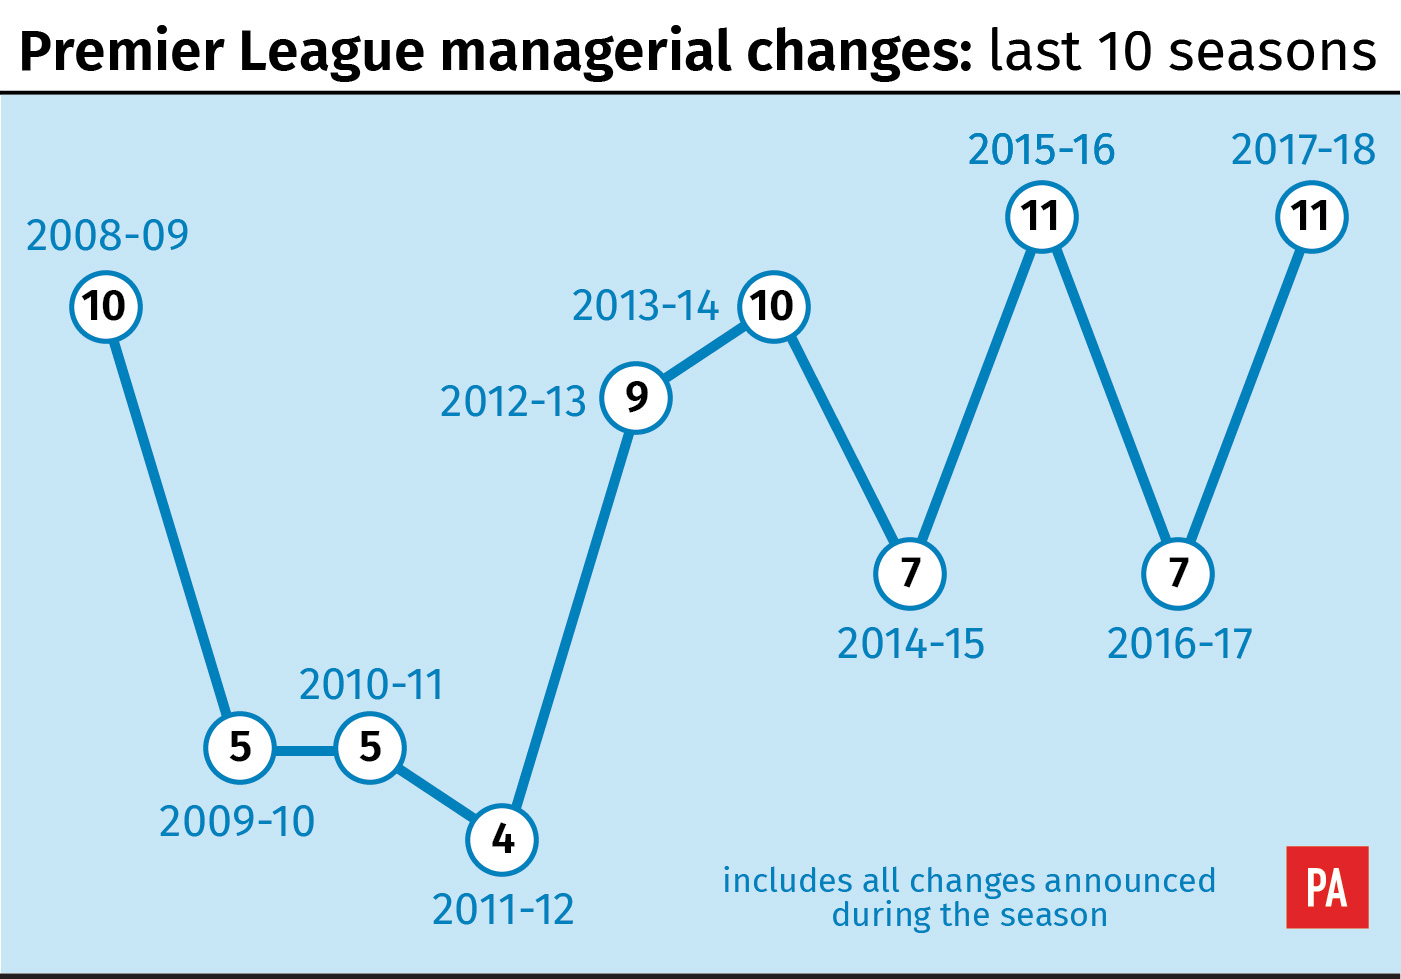 Premier League managerial changes: Last 10 seasons